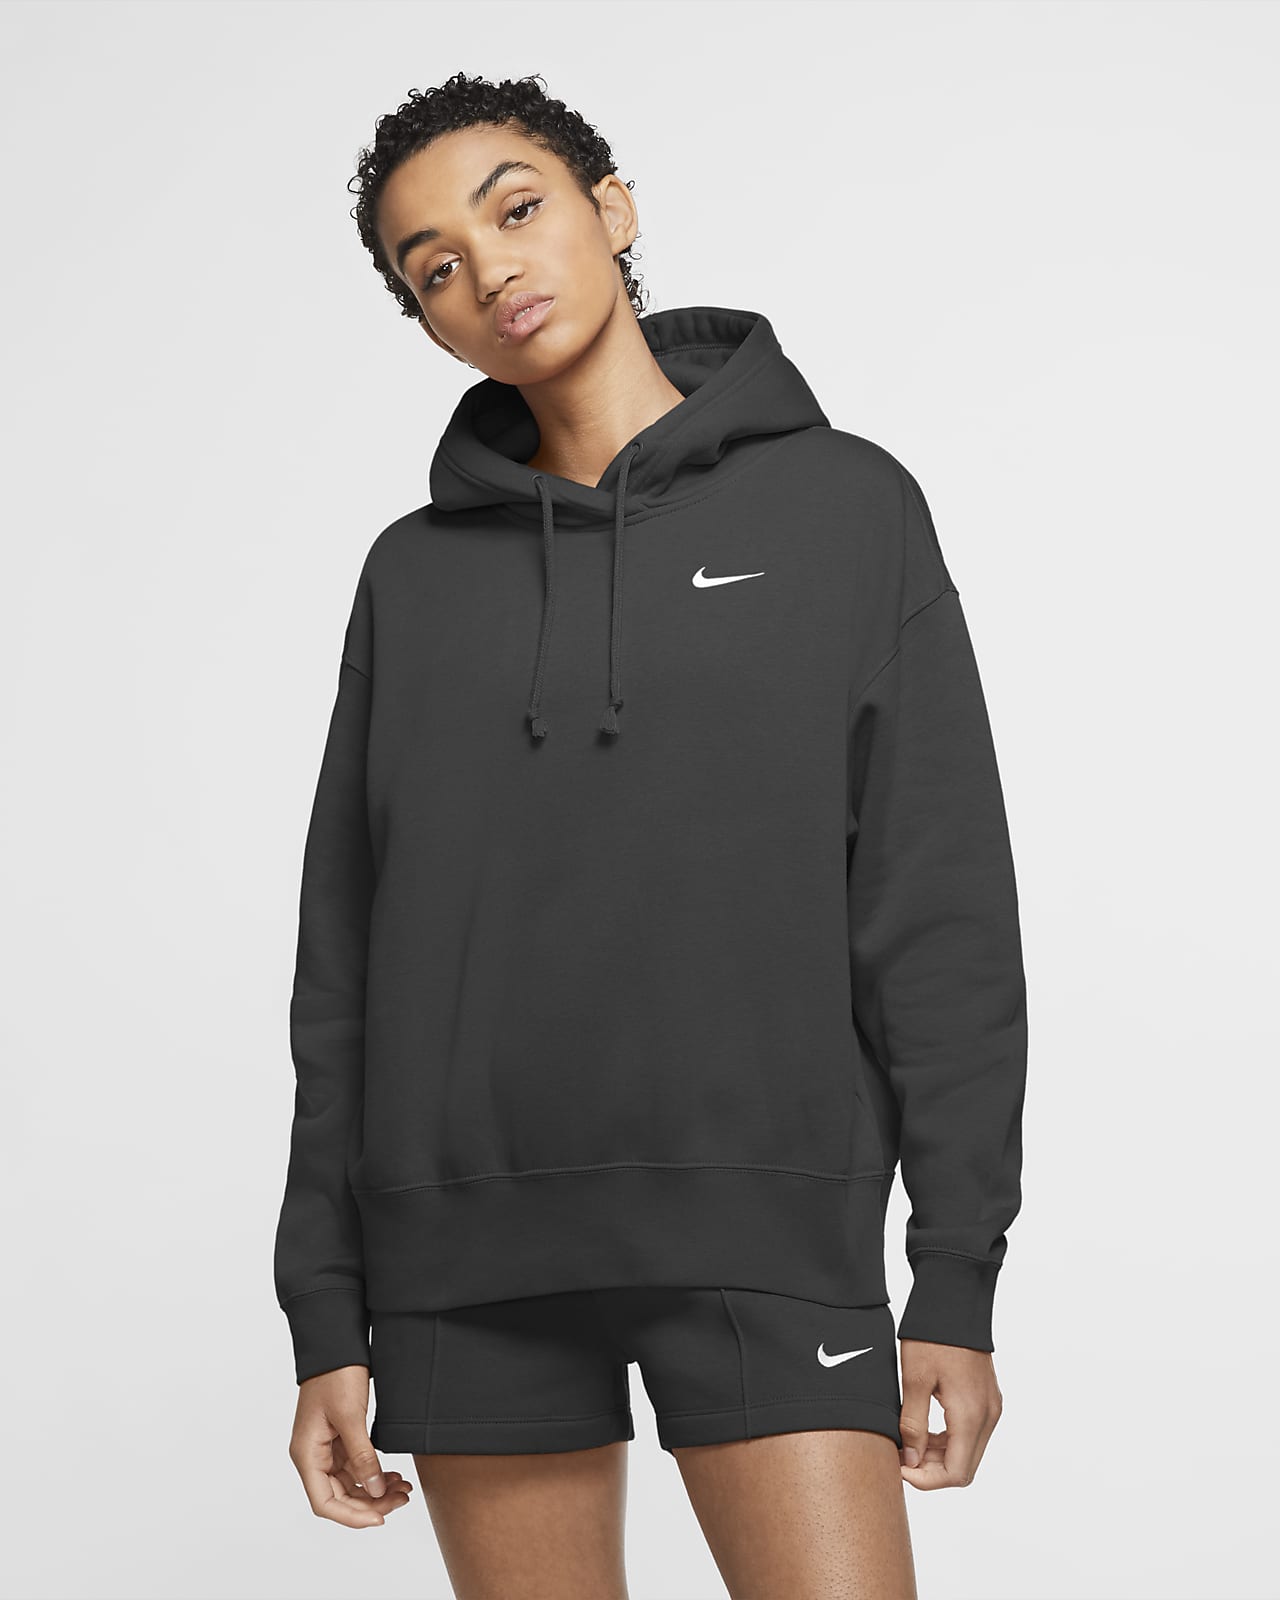 Nike Sportswear Women's Fleece Hoodie. Nike SA